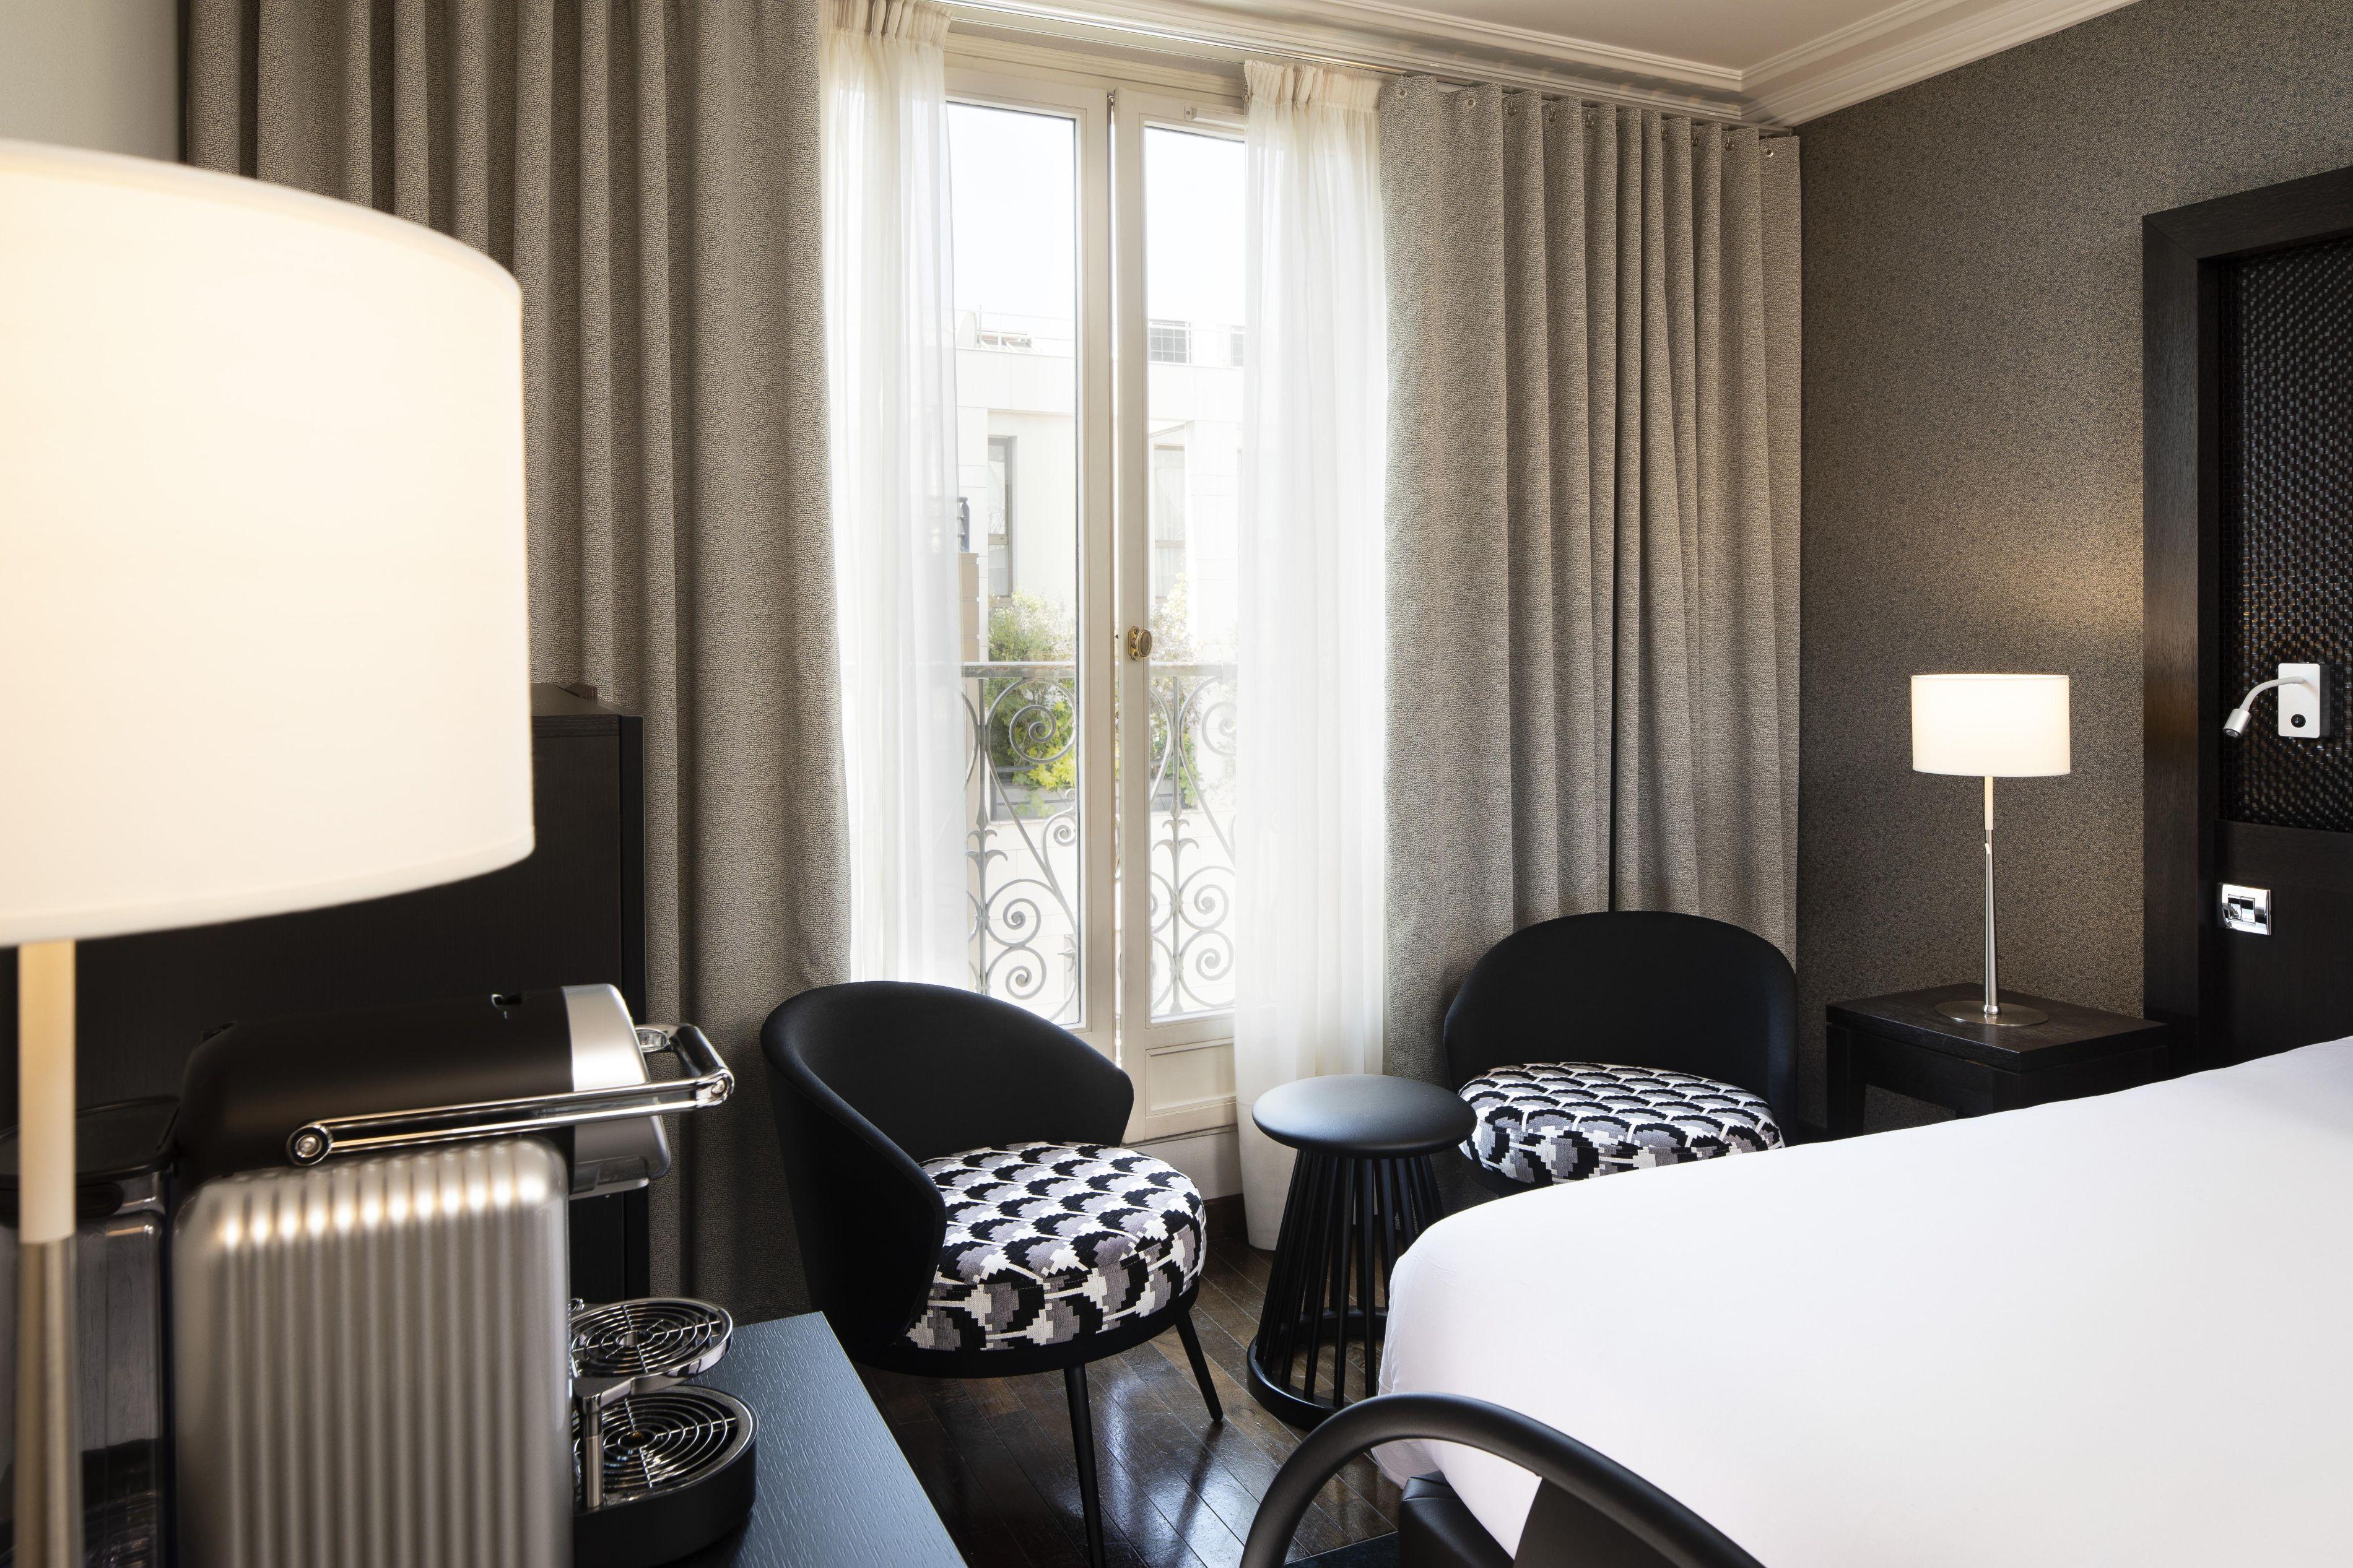 Hotel Elysees Regencia Paříž Exteriér fotografie